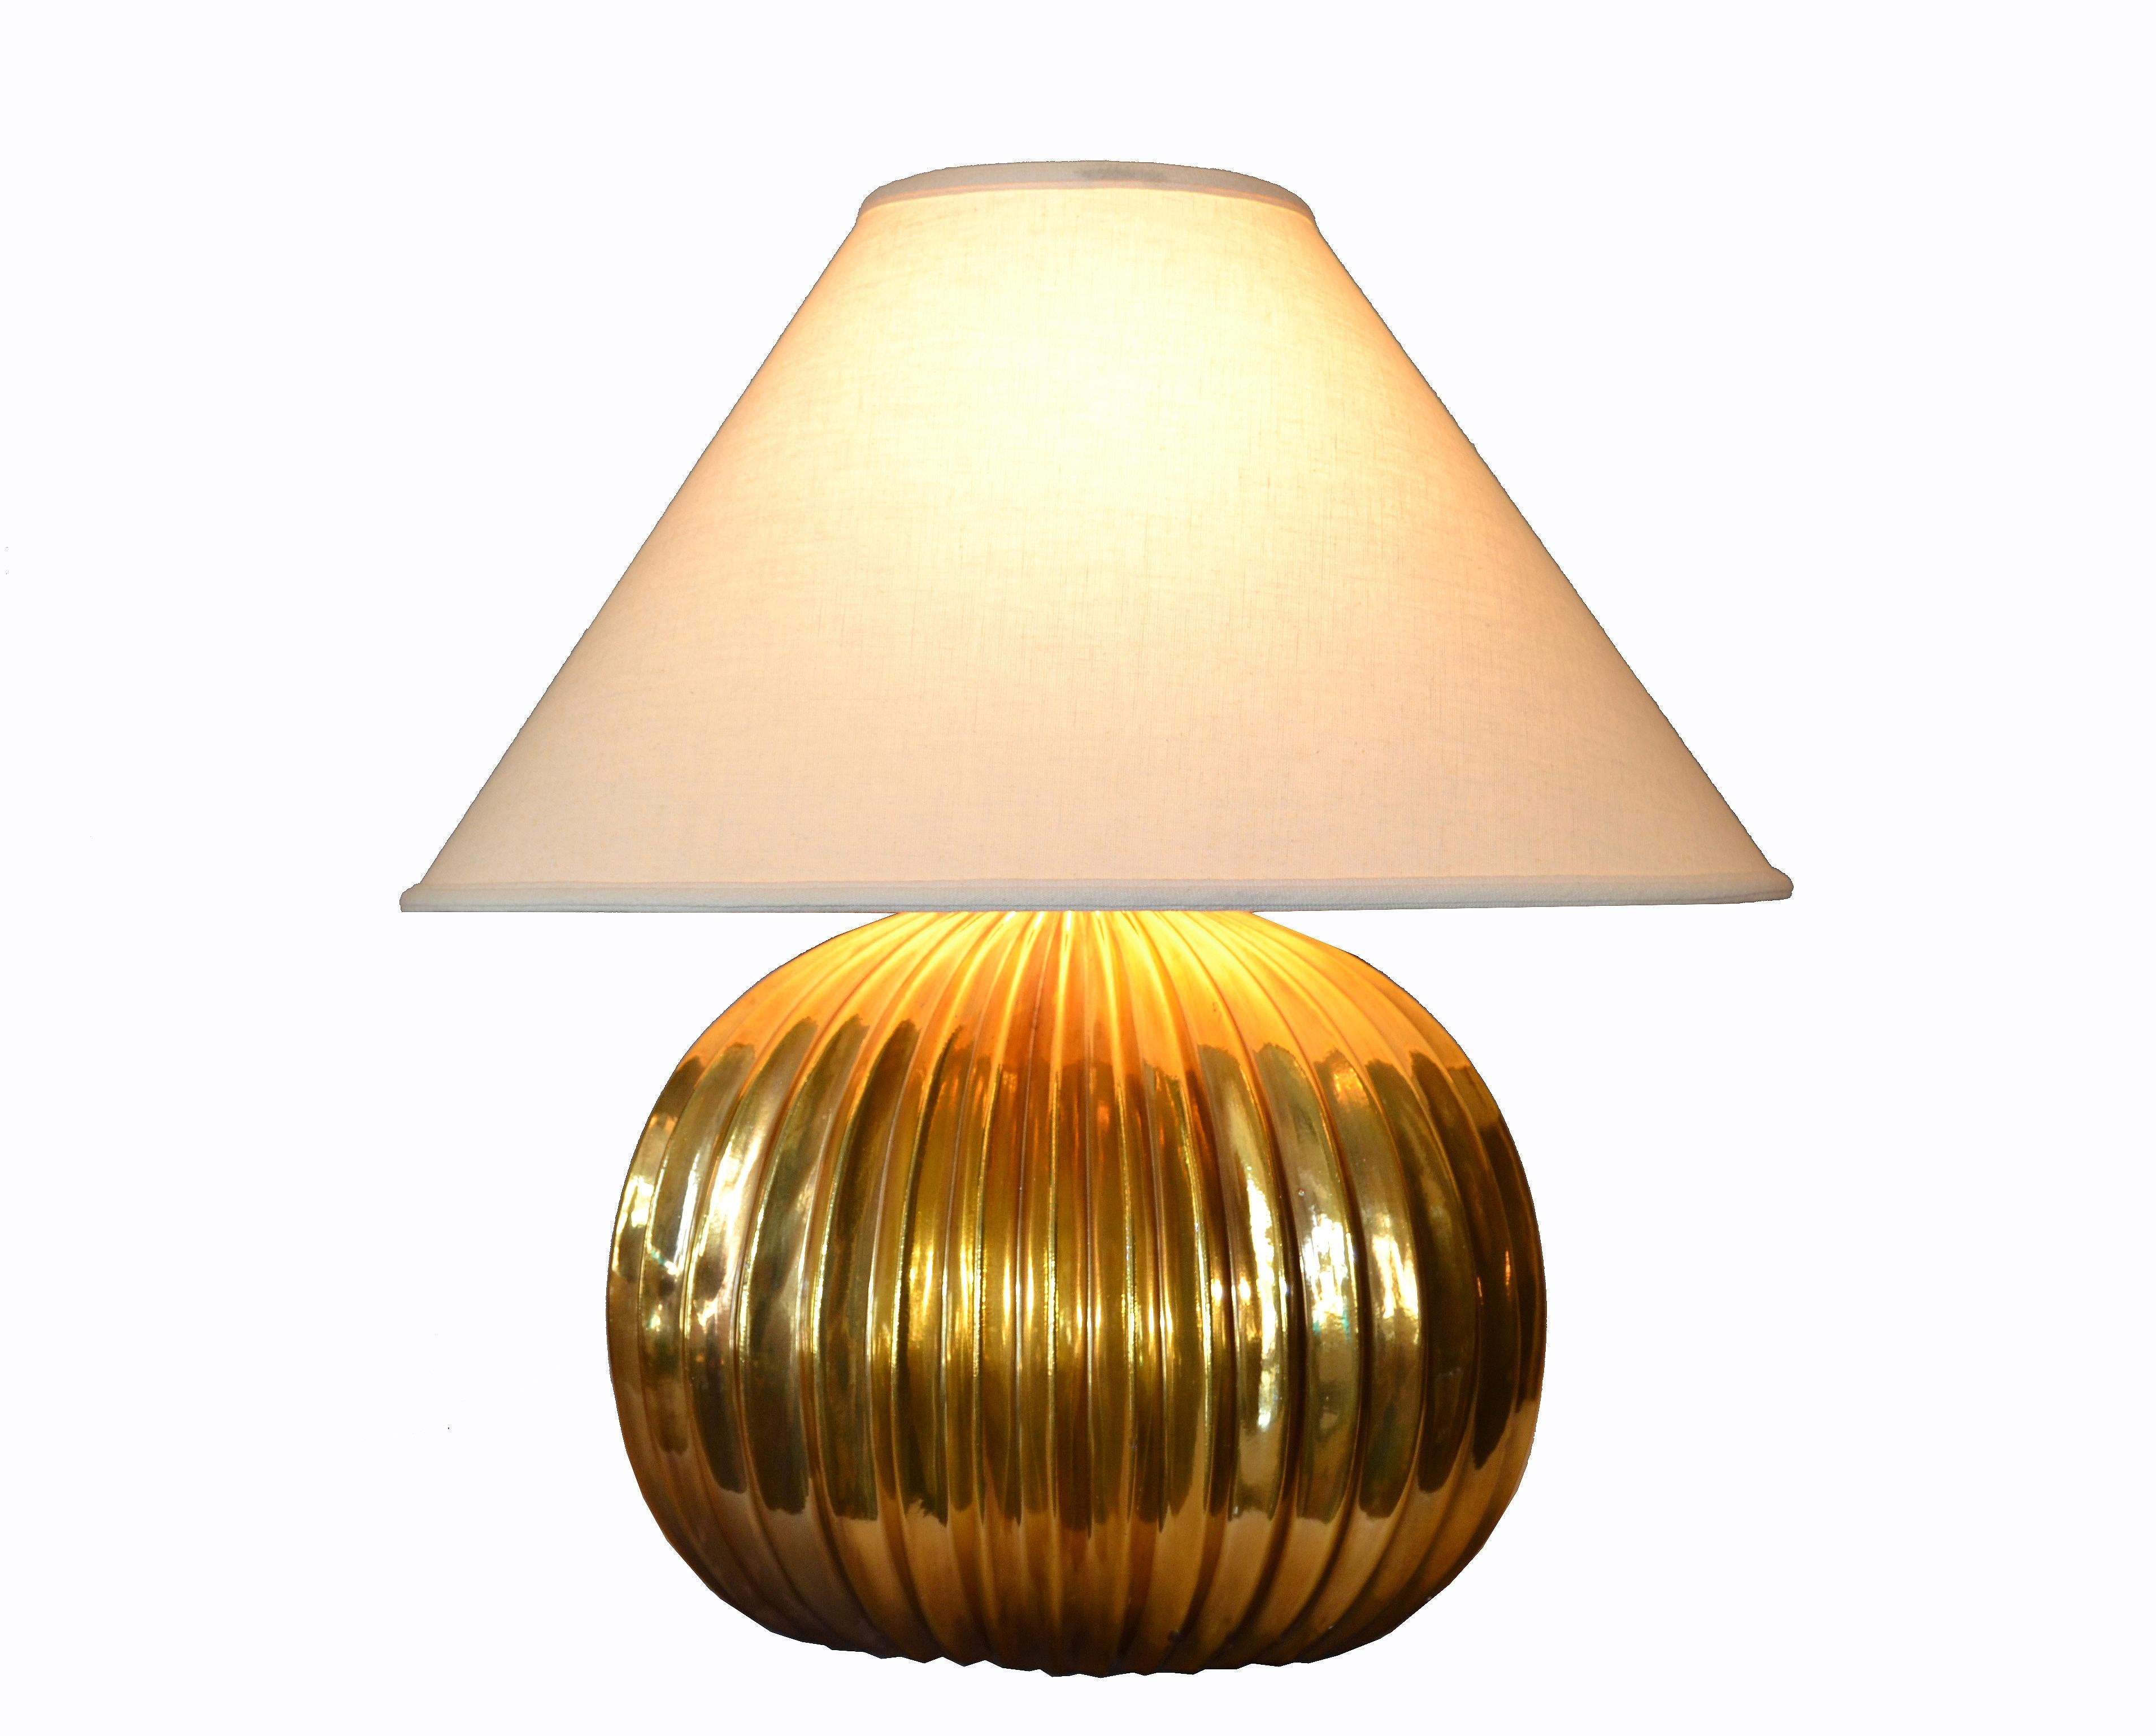 Wunderschöne italienische Mid-Century Modern goldene gerippte Tischlampe mit einem ovalen Leinenlampenschirm.
Für die USA verdrahtet und mit einer max. 75-Watt-Glühbirne.
Abmessungen Farbton:
Breite 23,25 Zoll
Tiefe 13,75 Zoll
Höhe 12,25 Zoll.